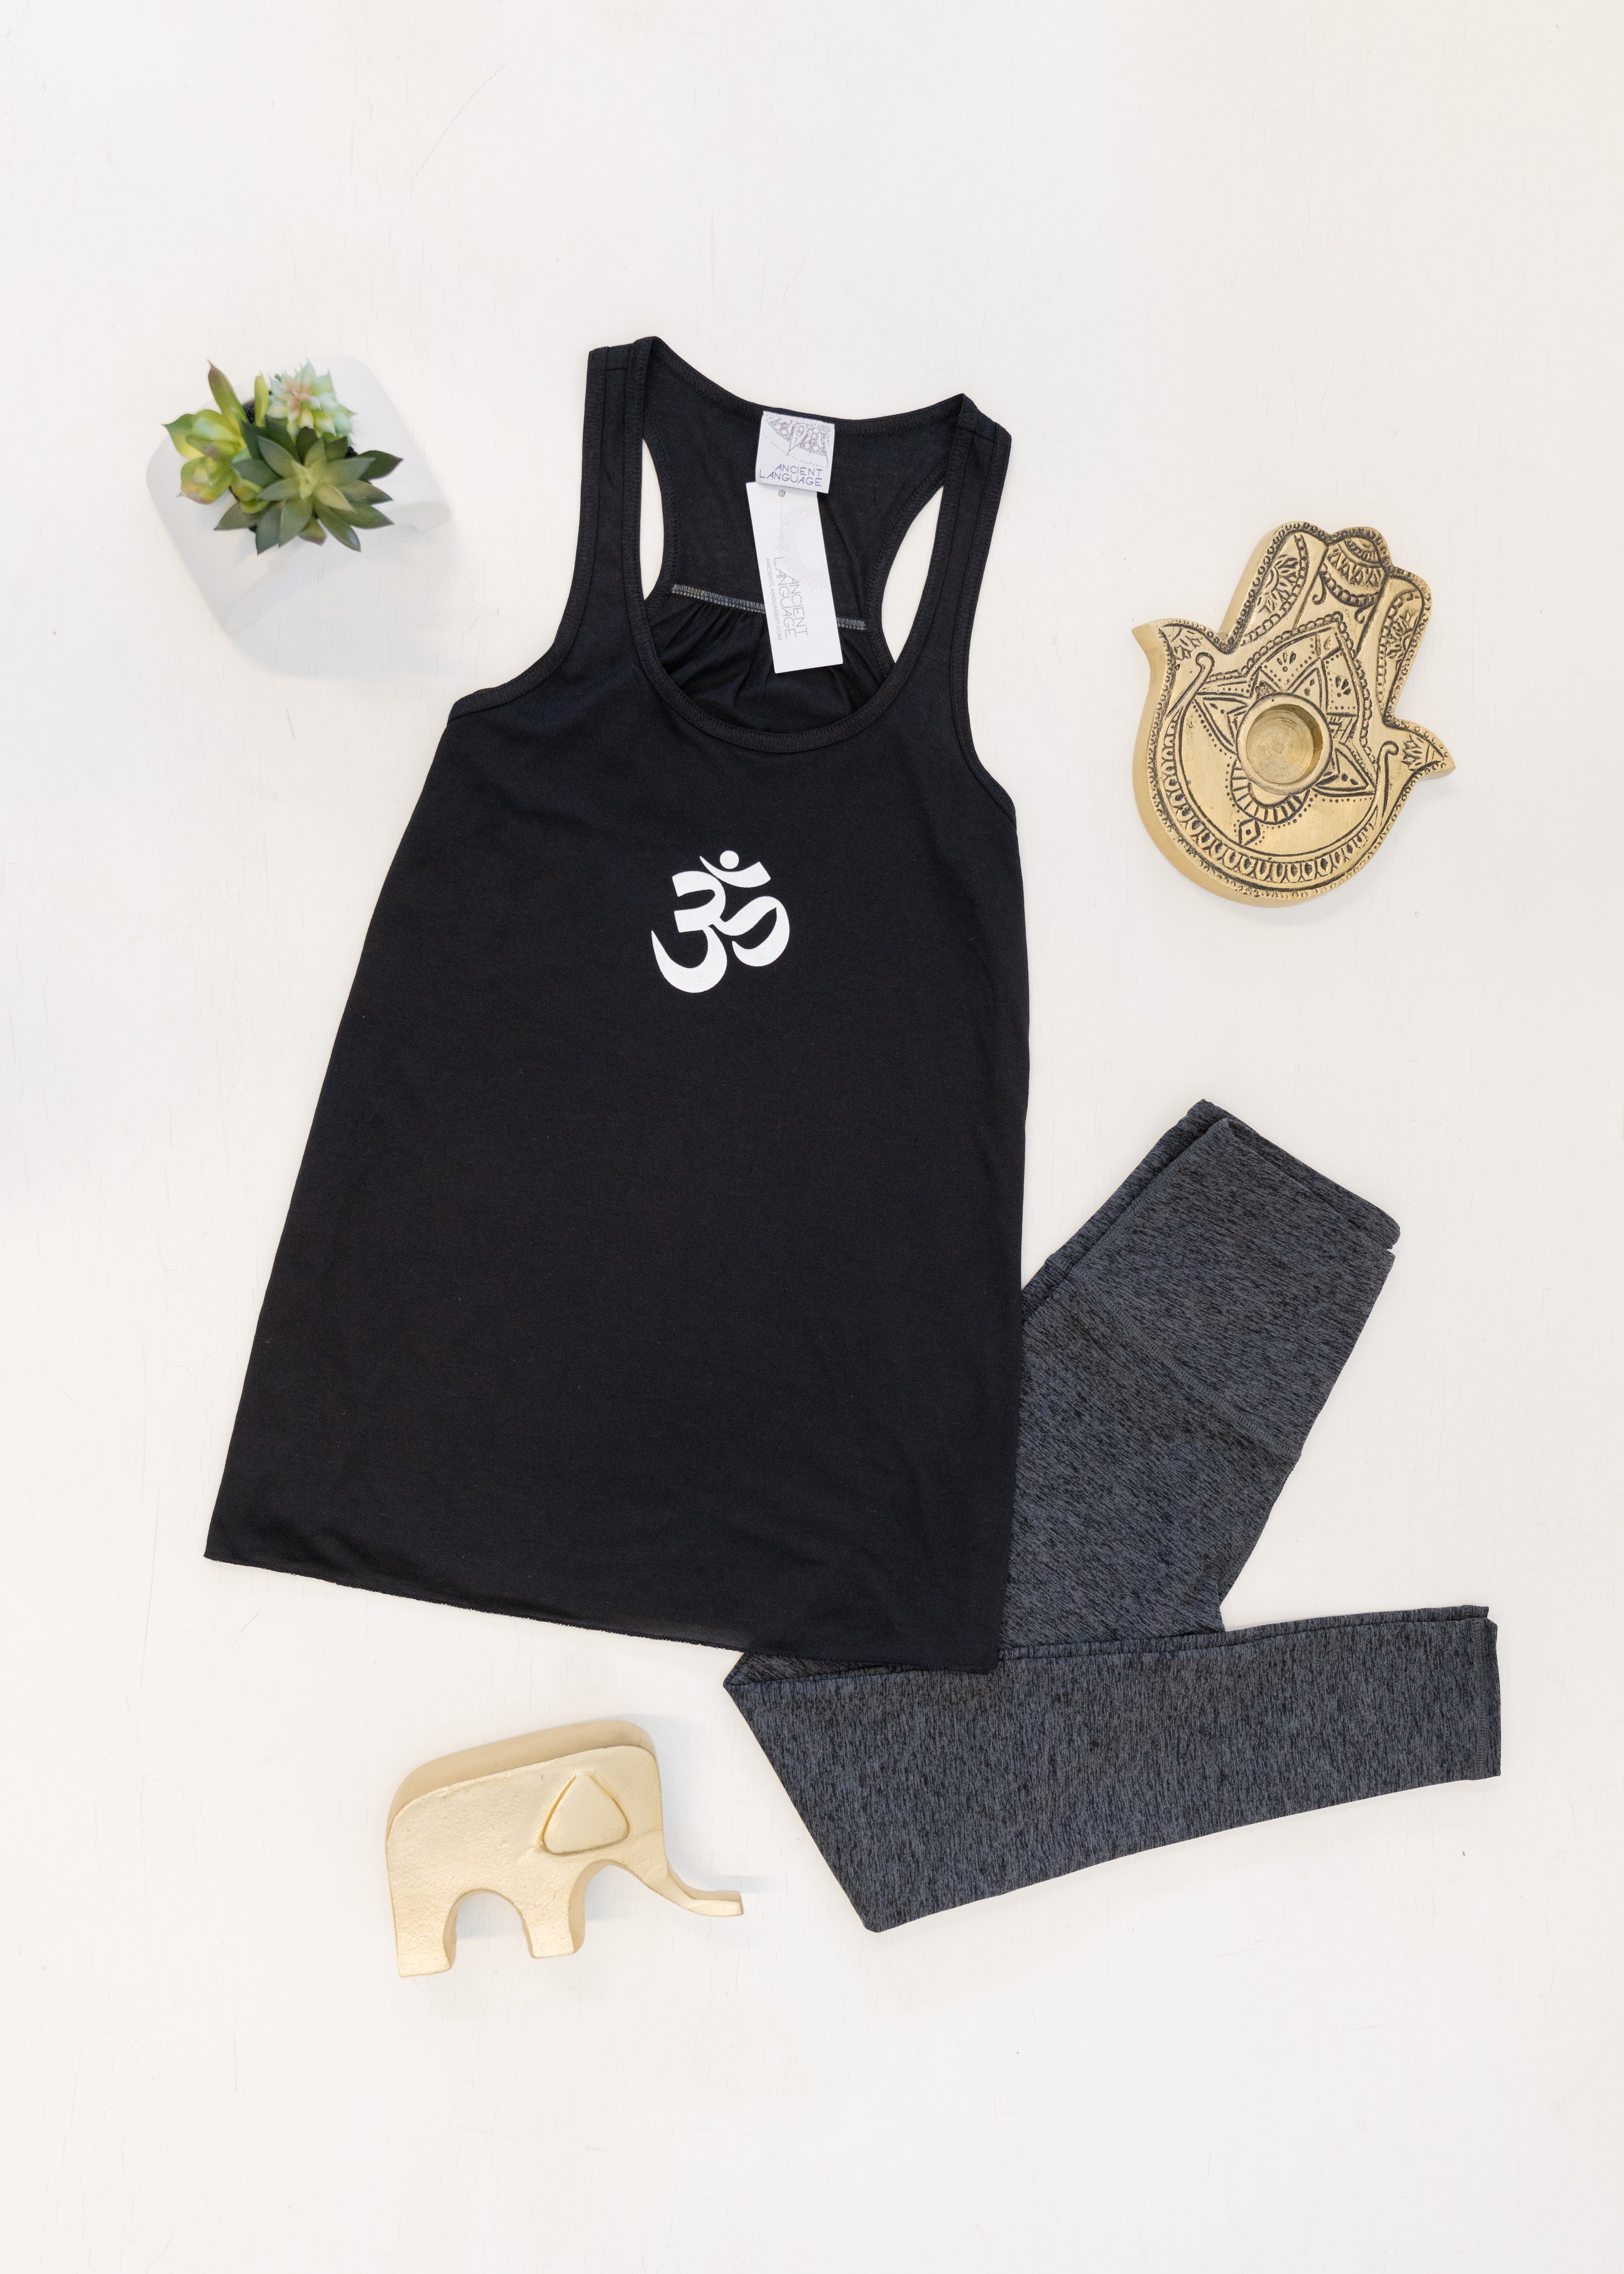 om-symbol-yoga-tank-with-yoga-legging-wholesale-clothing-ancient-language